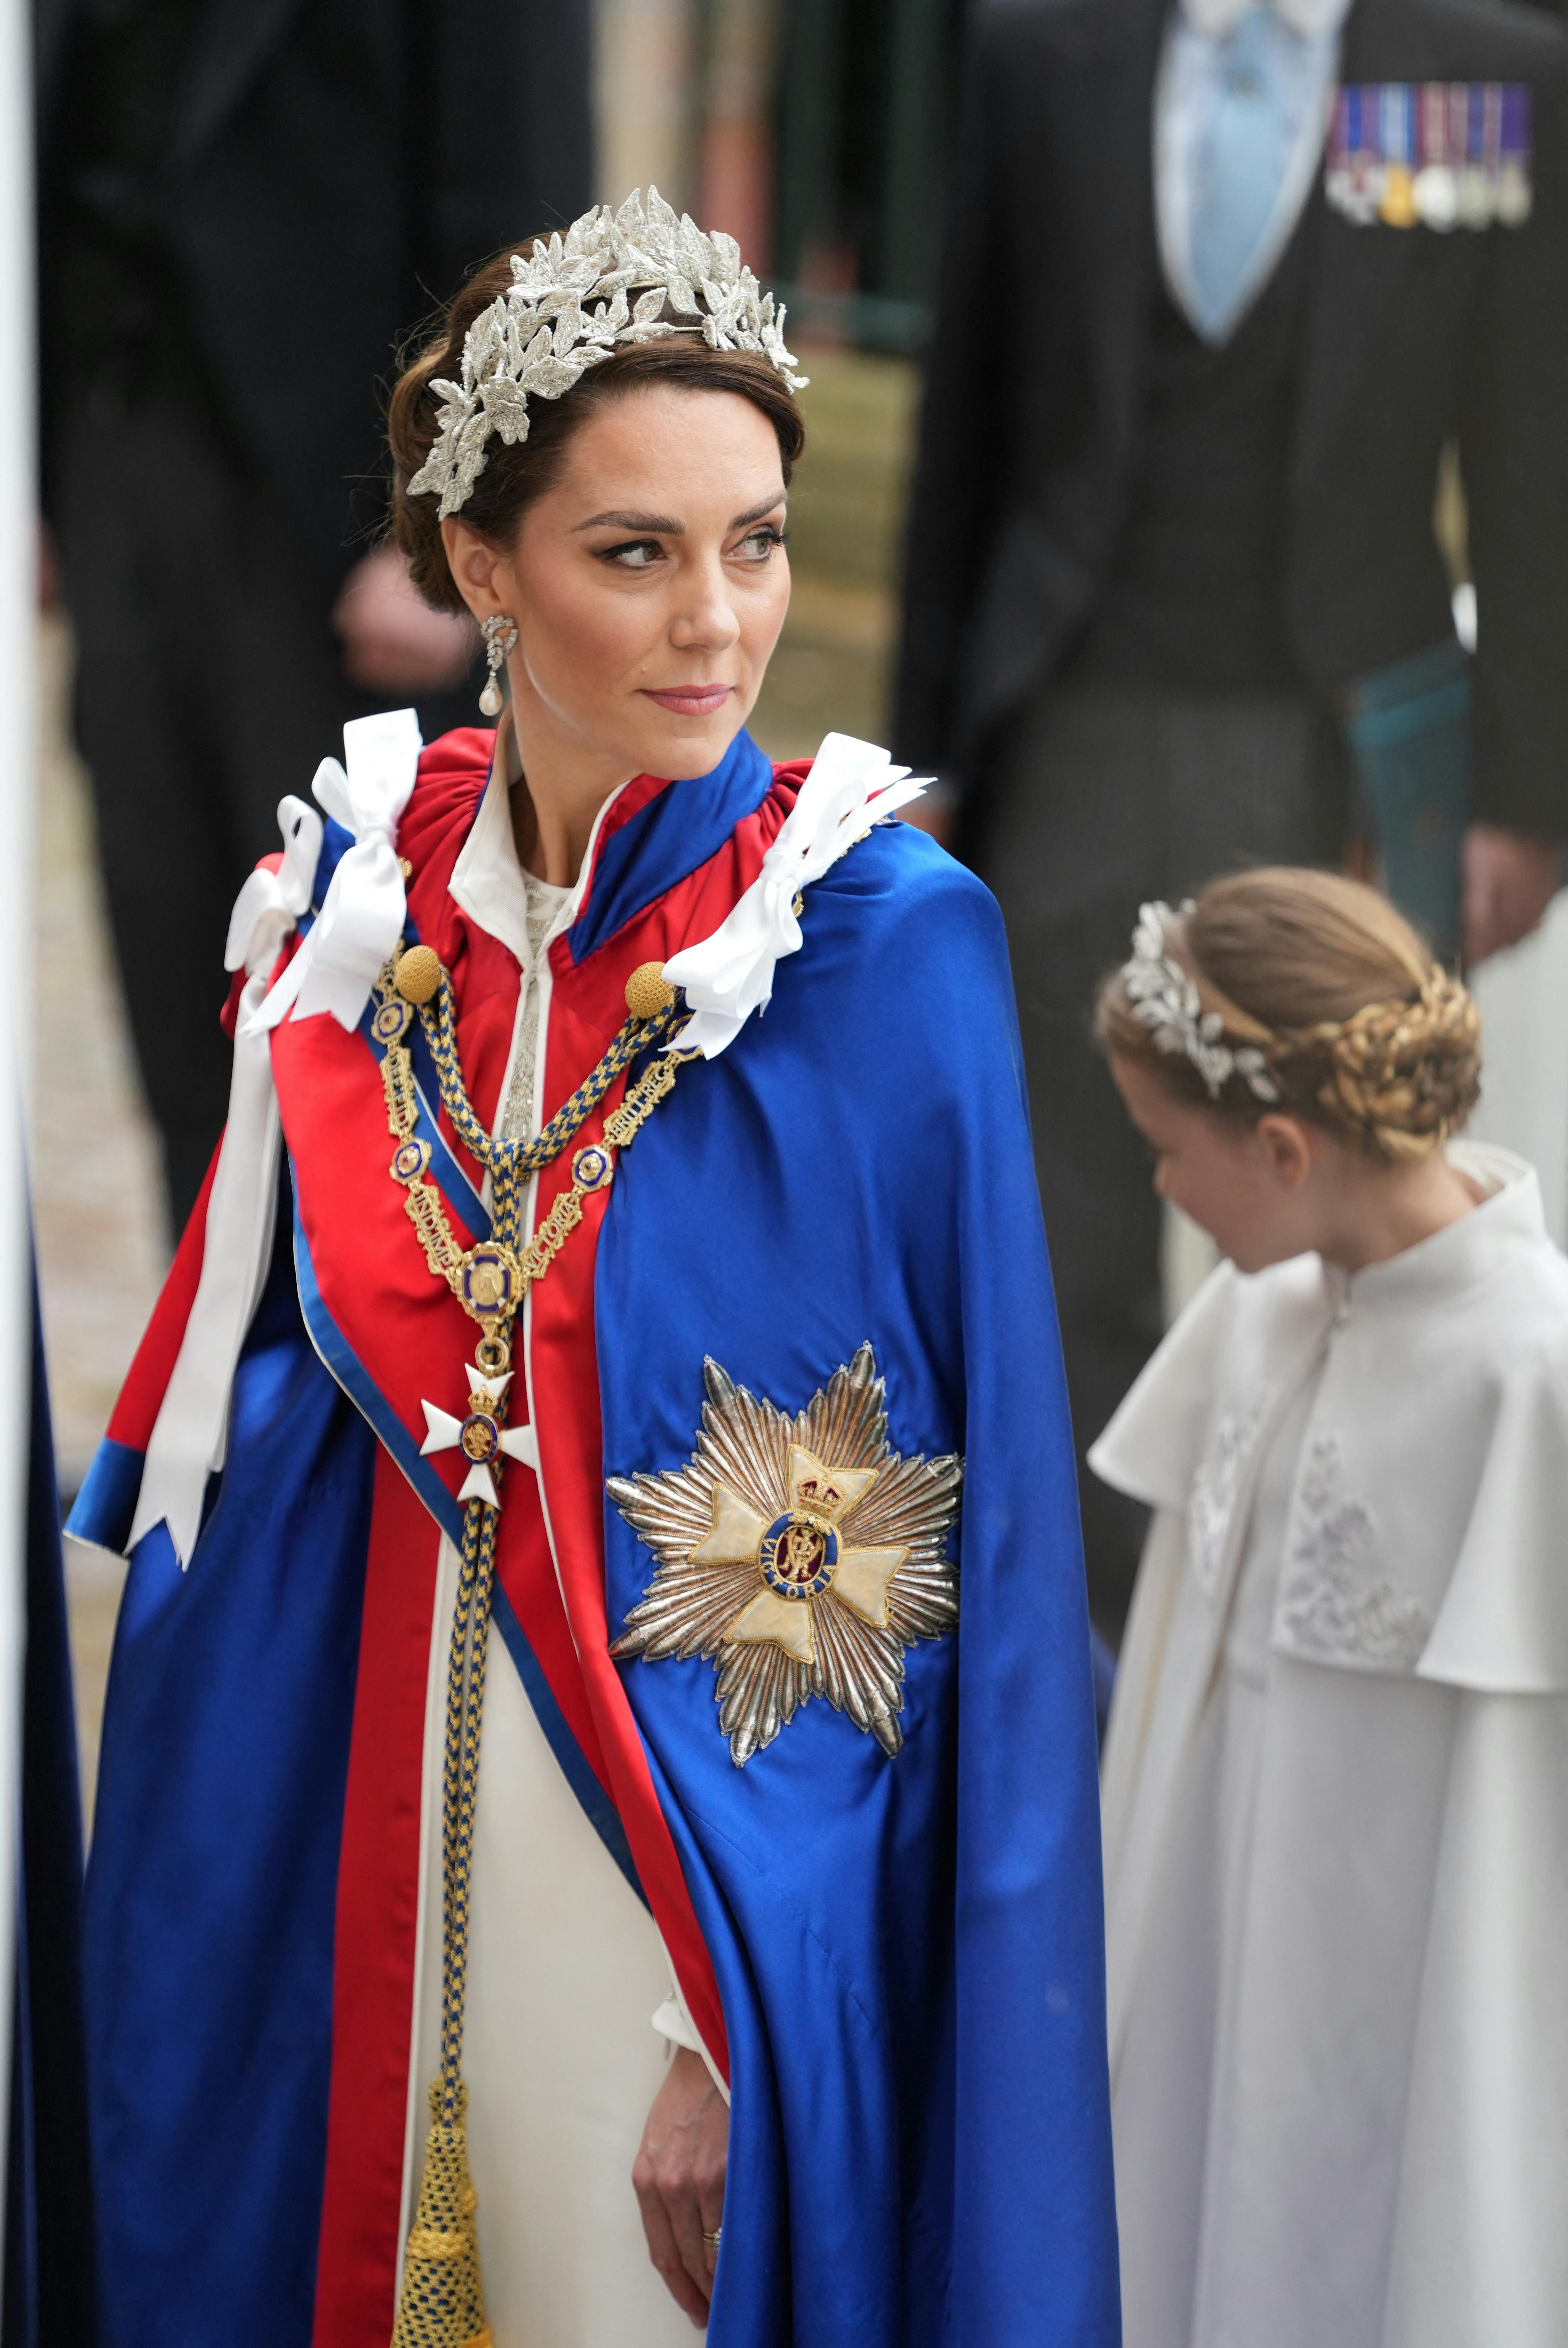 Hertuginde Catherine bar en smuk hvid kjole under sin kåbe.&nbsp;
